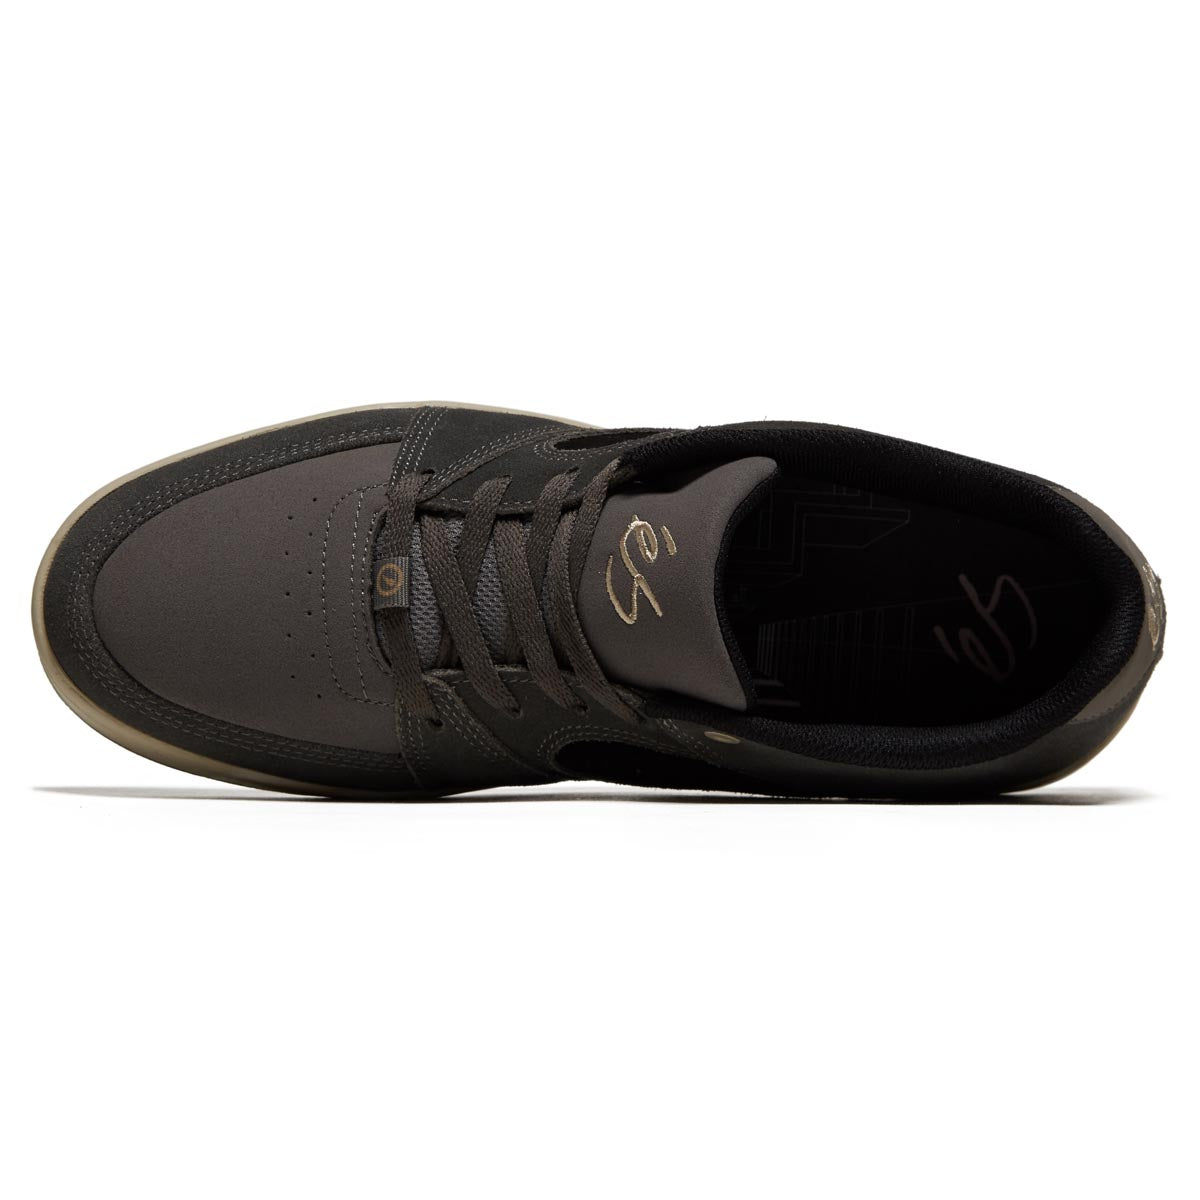 eS Accel Slim Shoes - Grey/Black image 3